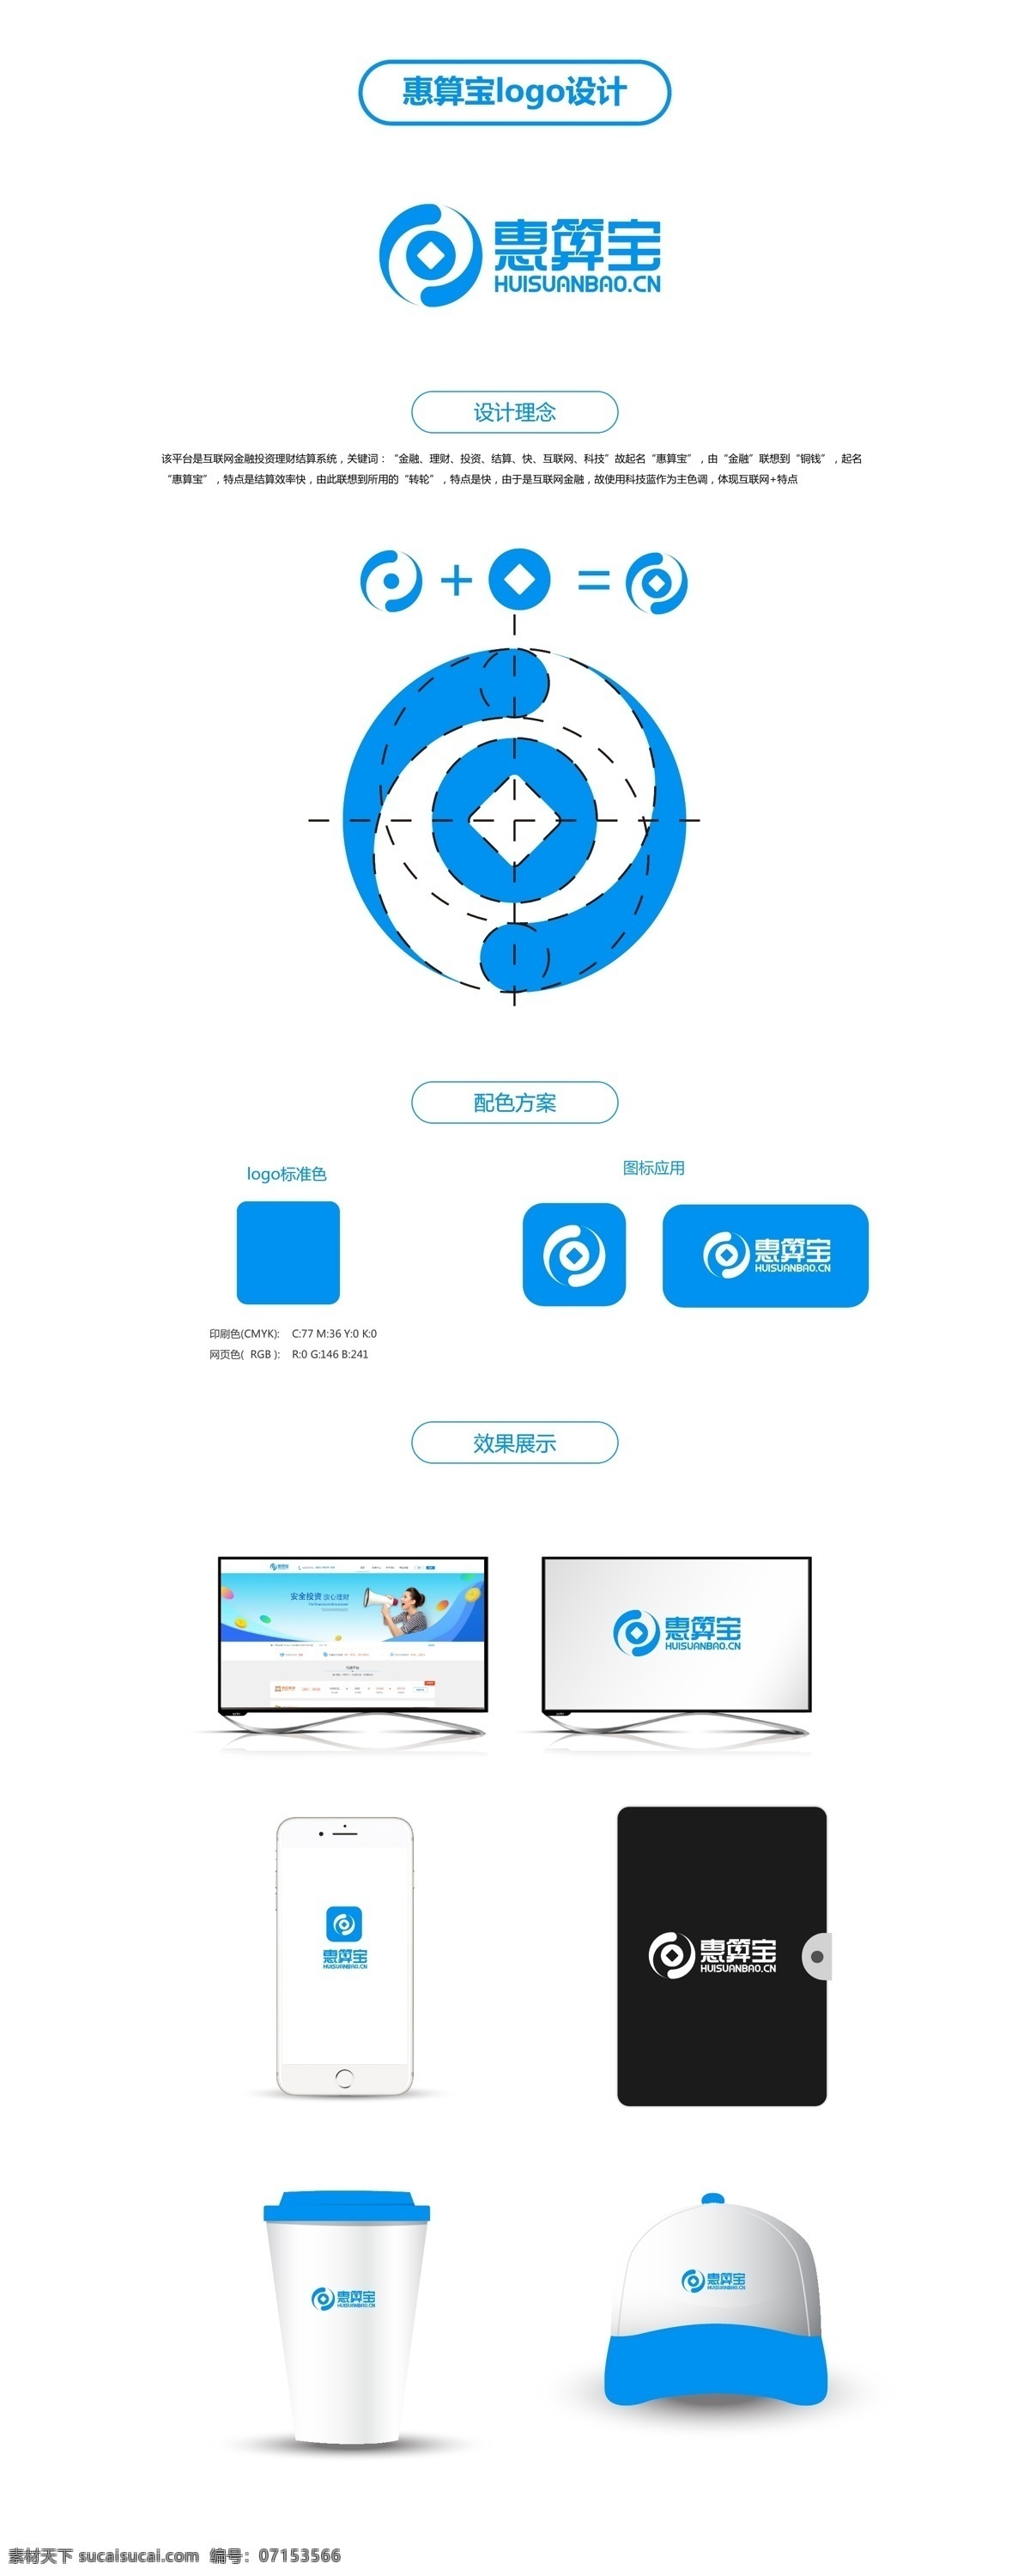 惠 算 宝蓝色 金融 宣传 商务 logo 蓝色 科技 互联网 标志 企业logo 企业vi